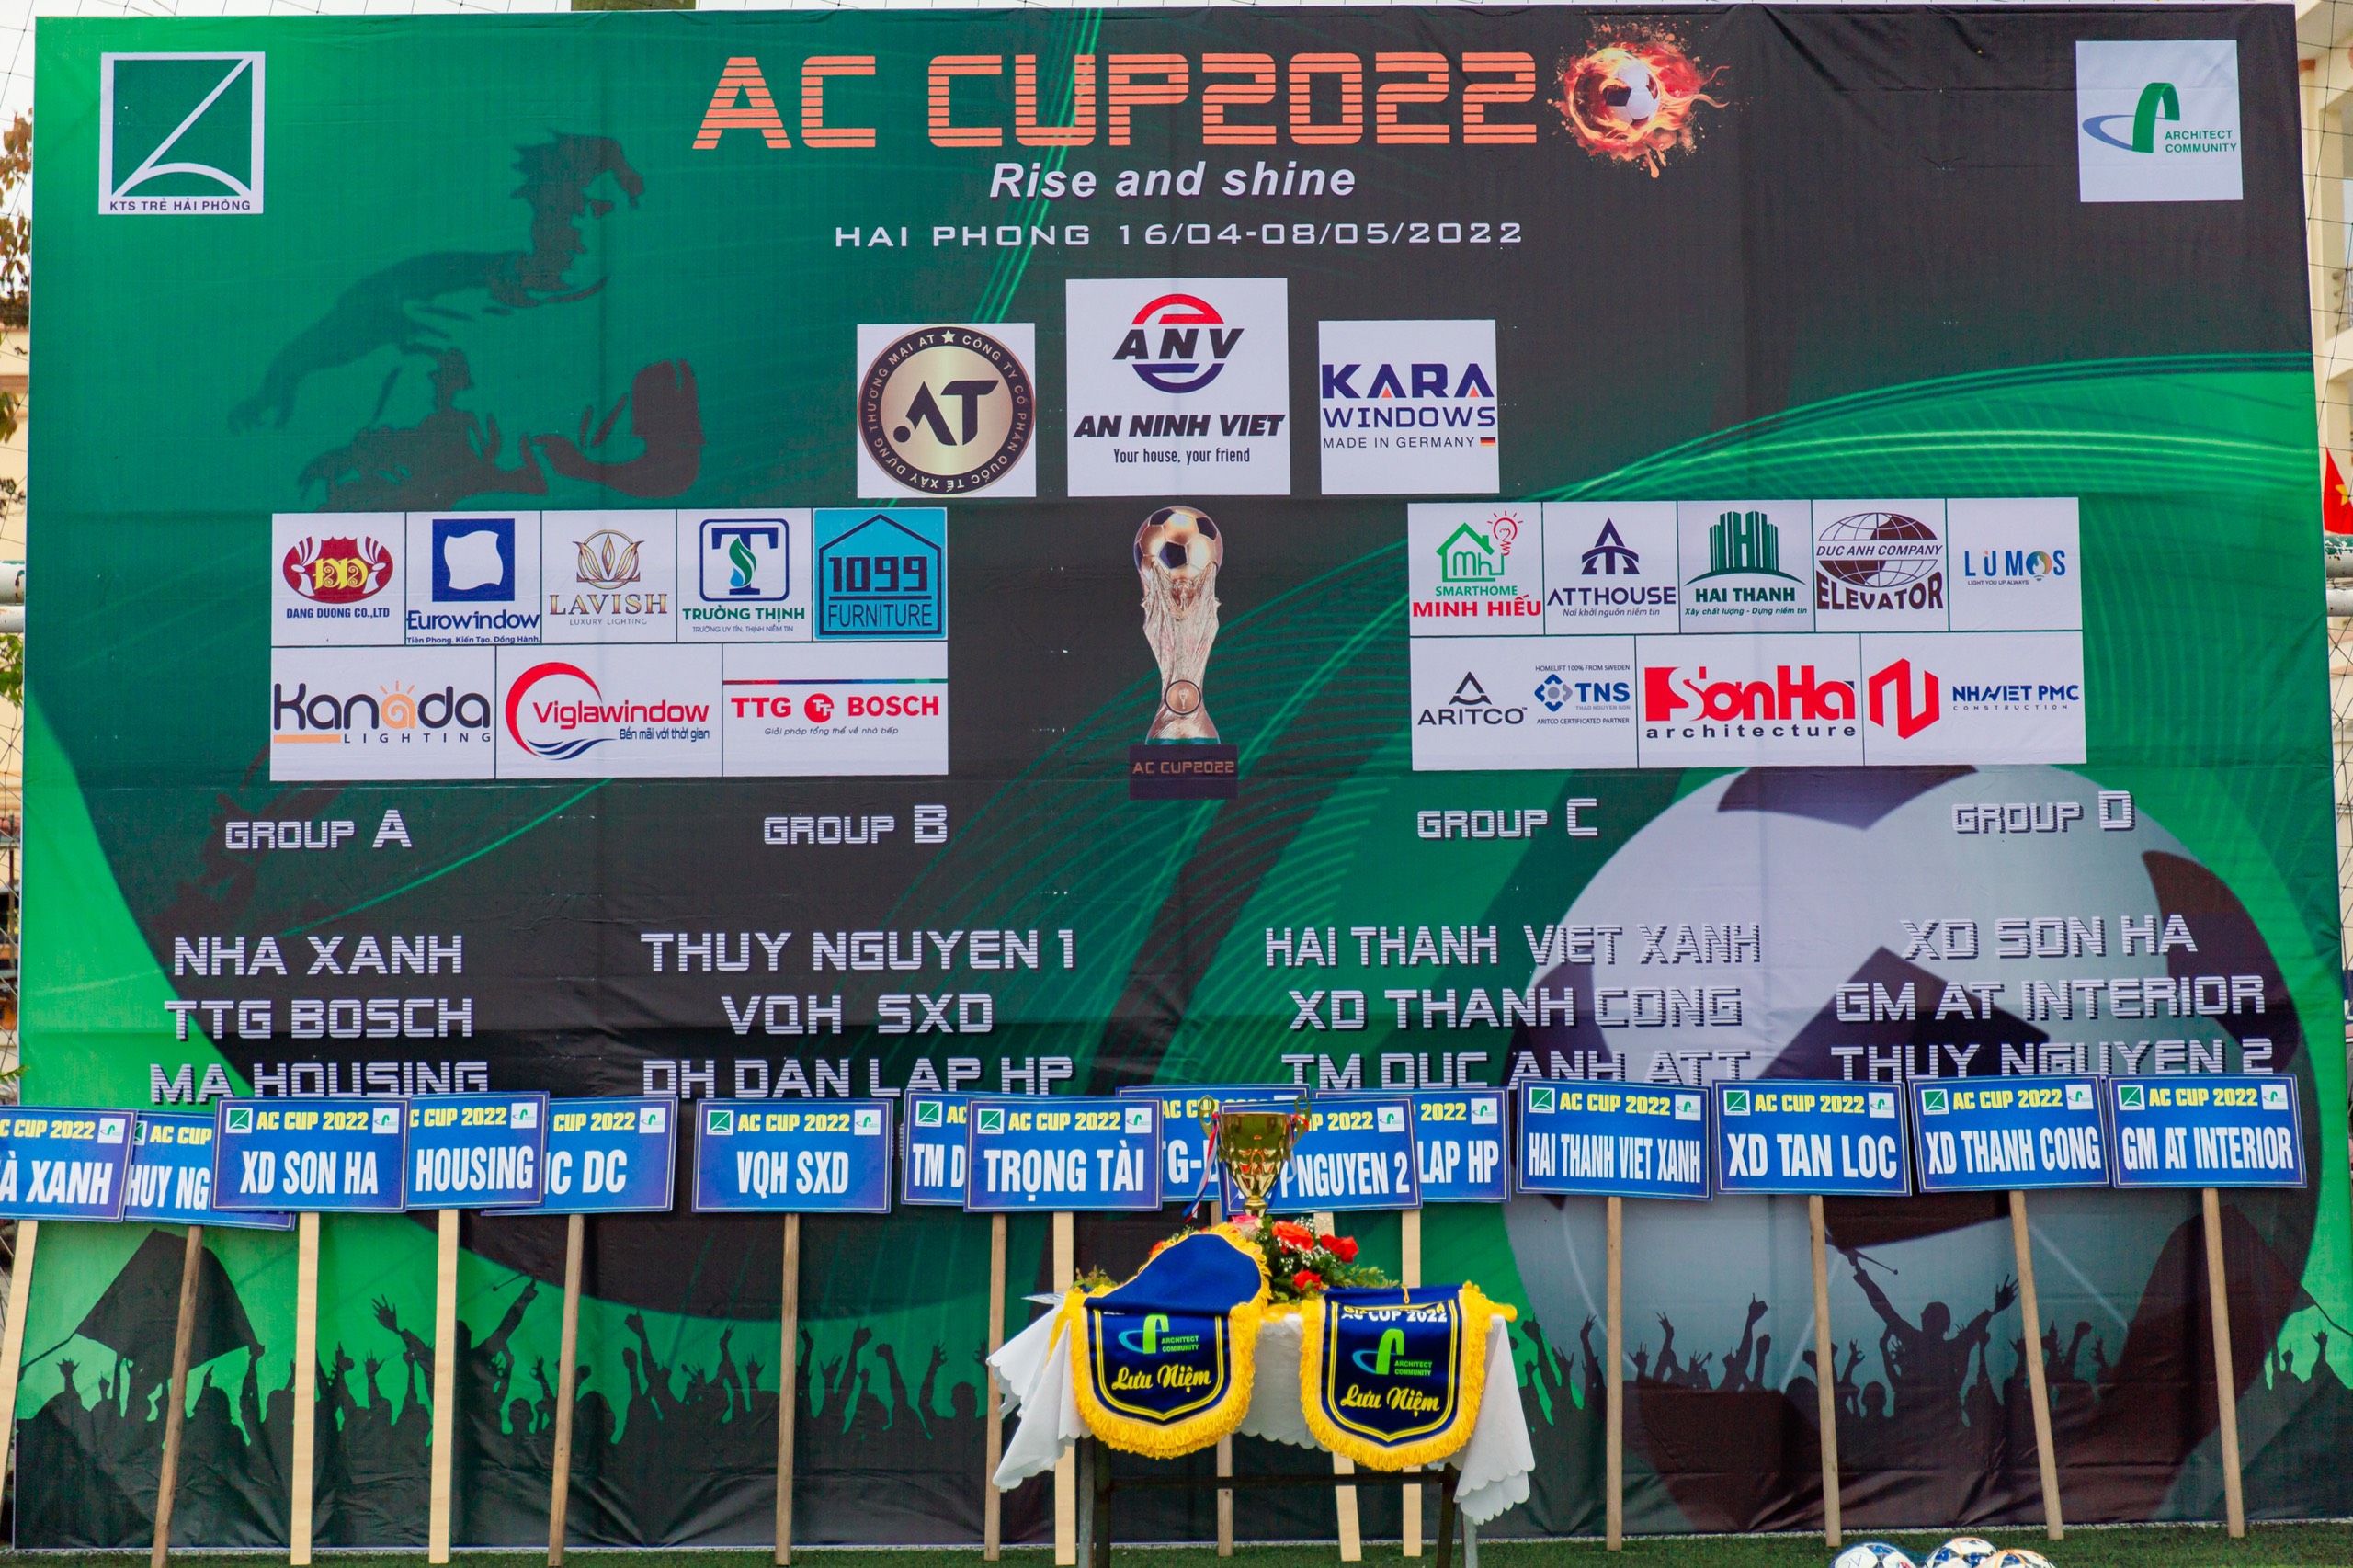 GIẢI BÓNG ĐÁ AC CUP 2022